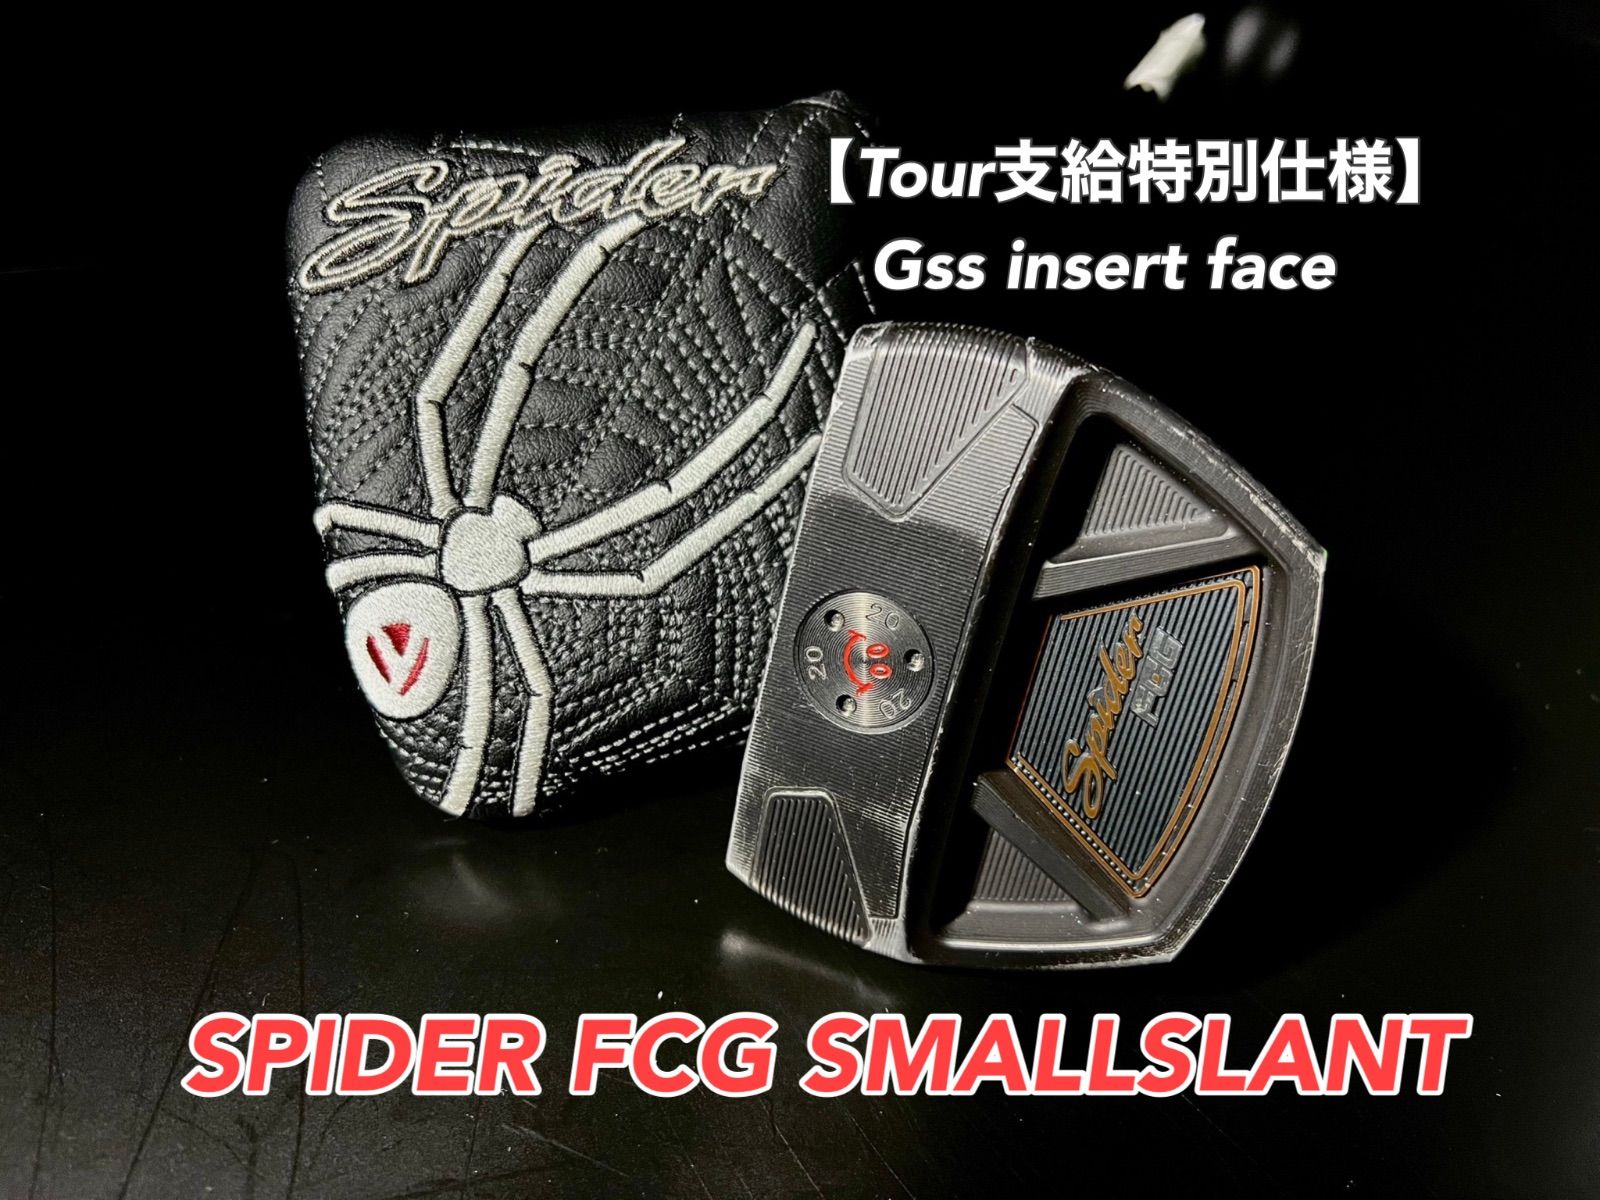 支給品】SPIDER FCG SMALLSLANT-ecosea.do